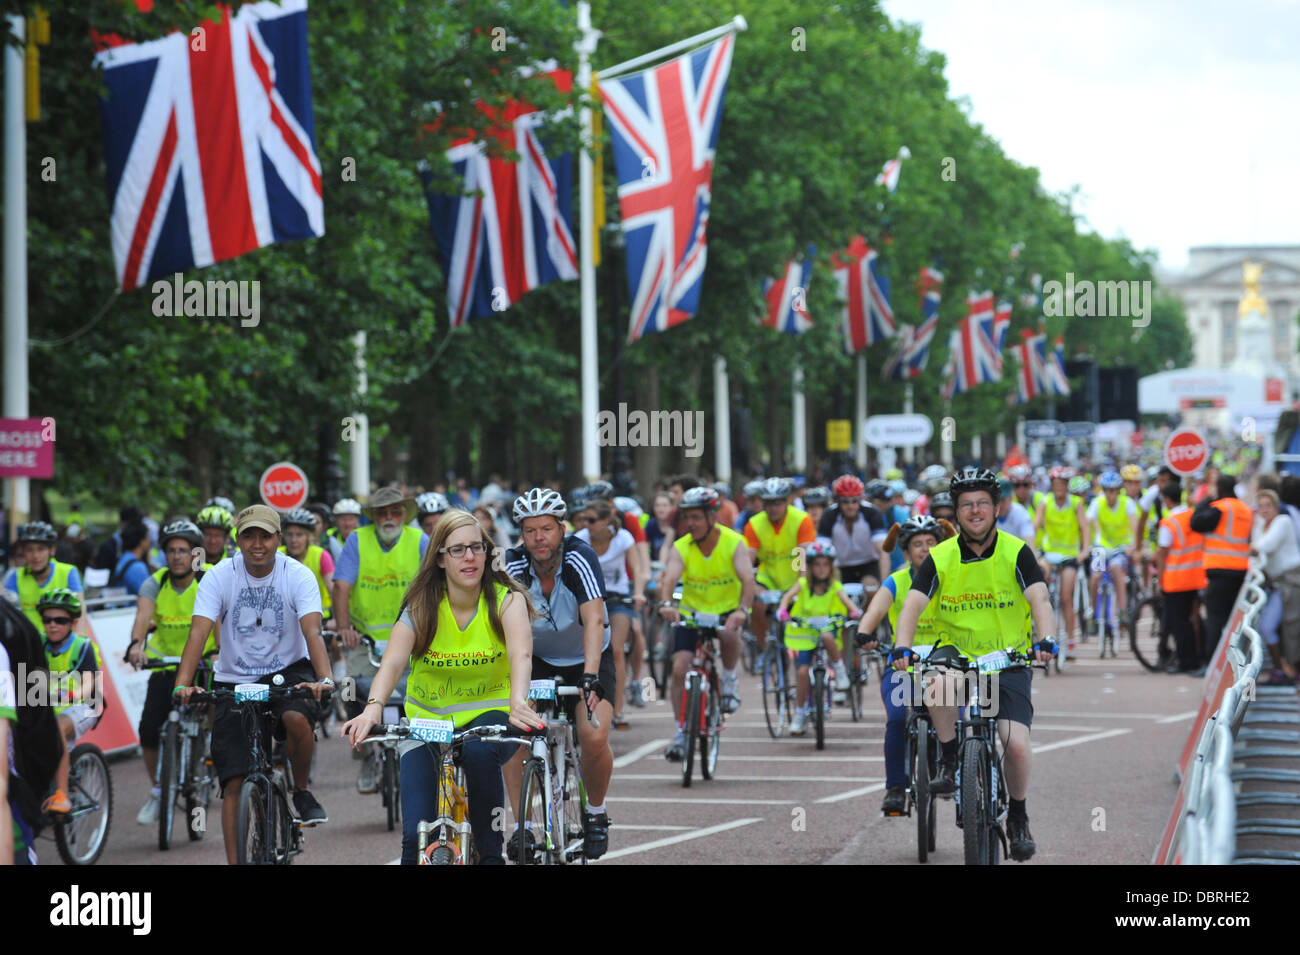 El Mall, Londres, Reino Unido. El 3 de agosto de 2013. Los ciclistas de todas las edades participan en el evento, que forma parte del ciclo gratuito de Prudential RideLondon ciclista. Crédito: Matthew Chattle/Alamy Live News Foto de stock